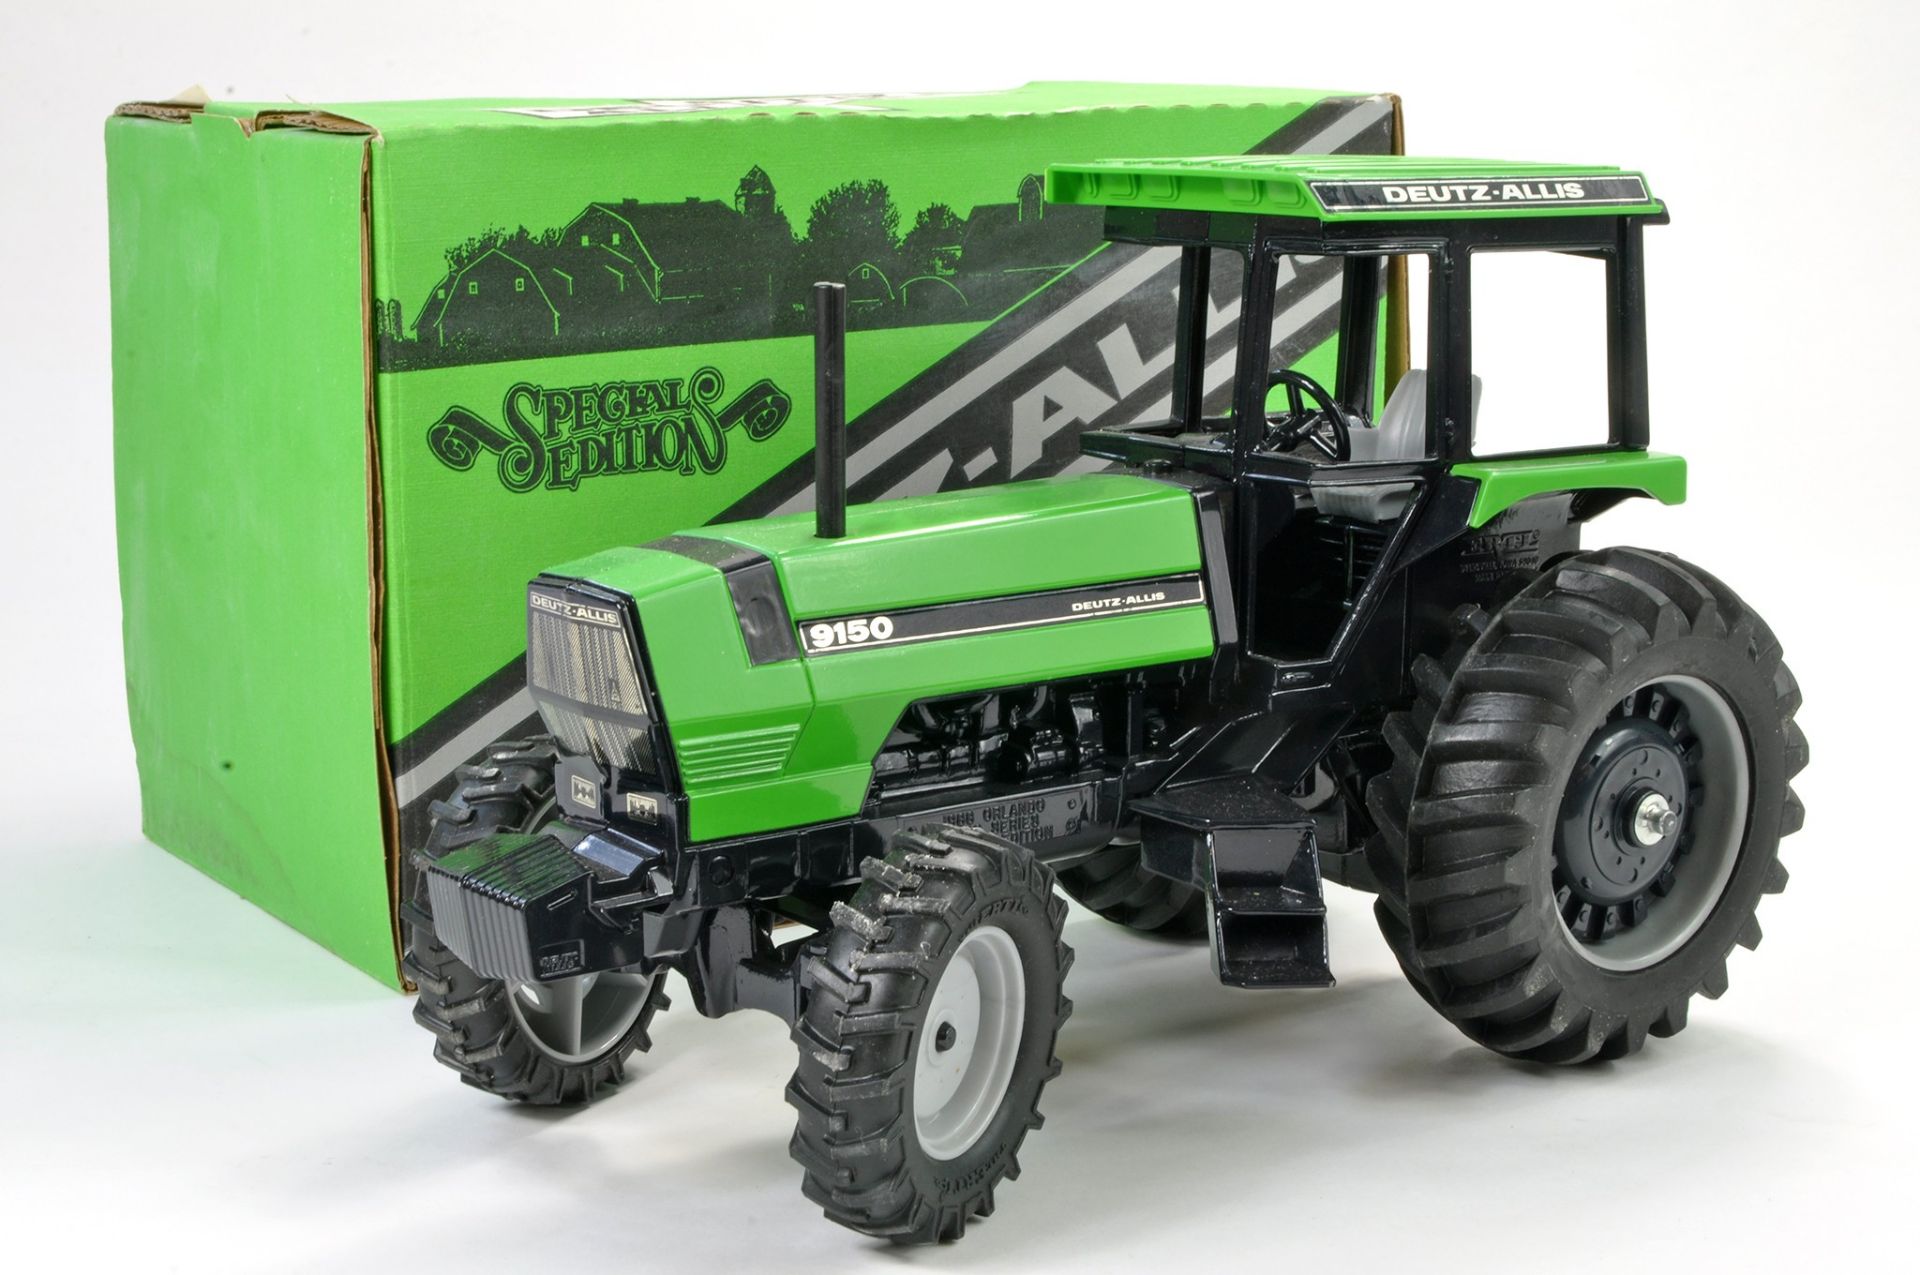 Ertl 1/16 Model Farm issue comprising Deutz Allis 9150 Tractor. Special 1988 Orlando Edition.